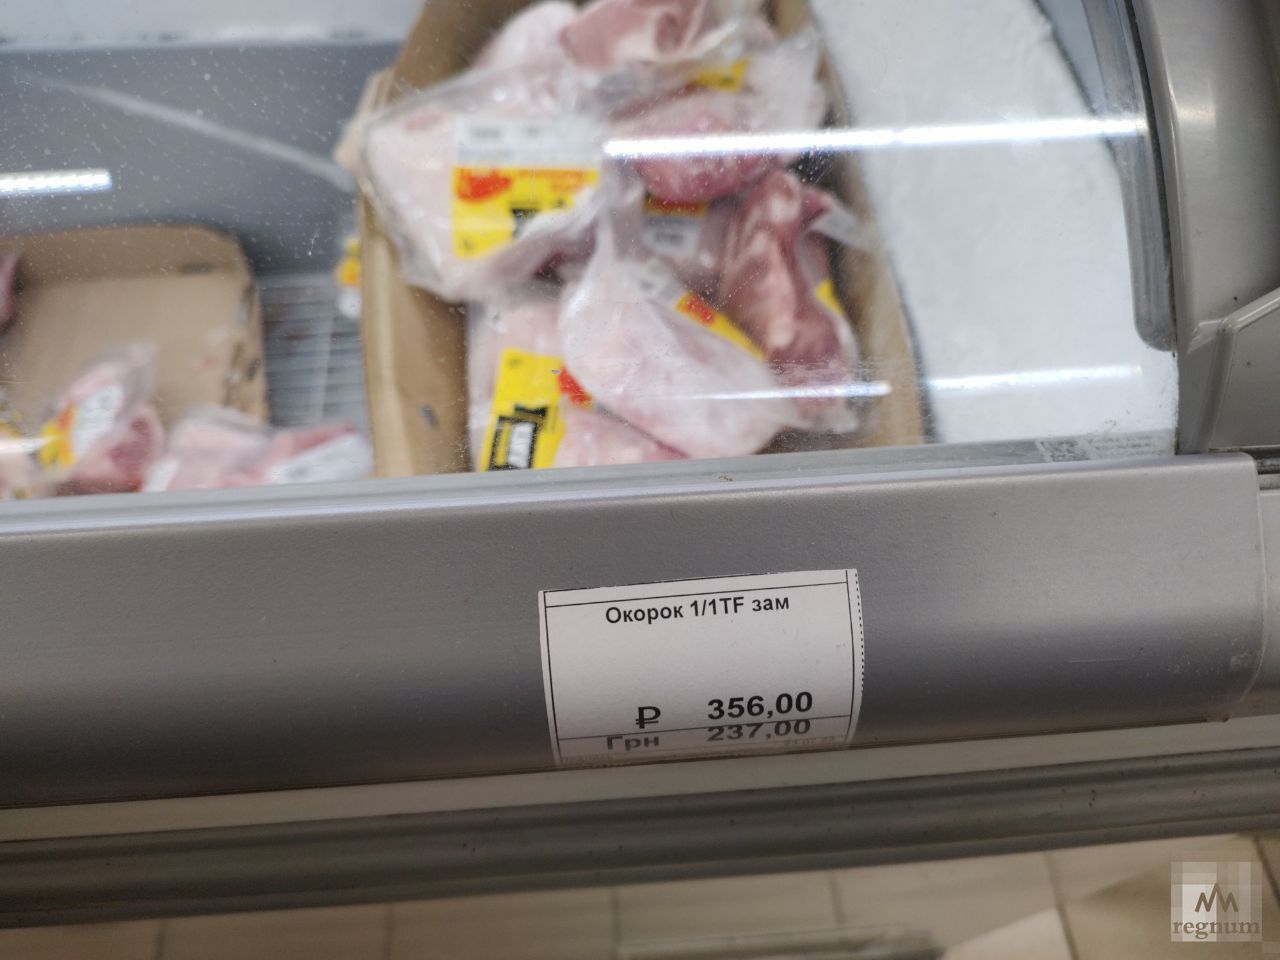 Цены на продукты в магазине Мариуполя. Окорок